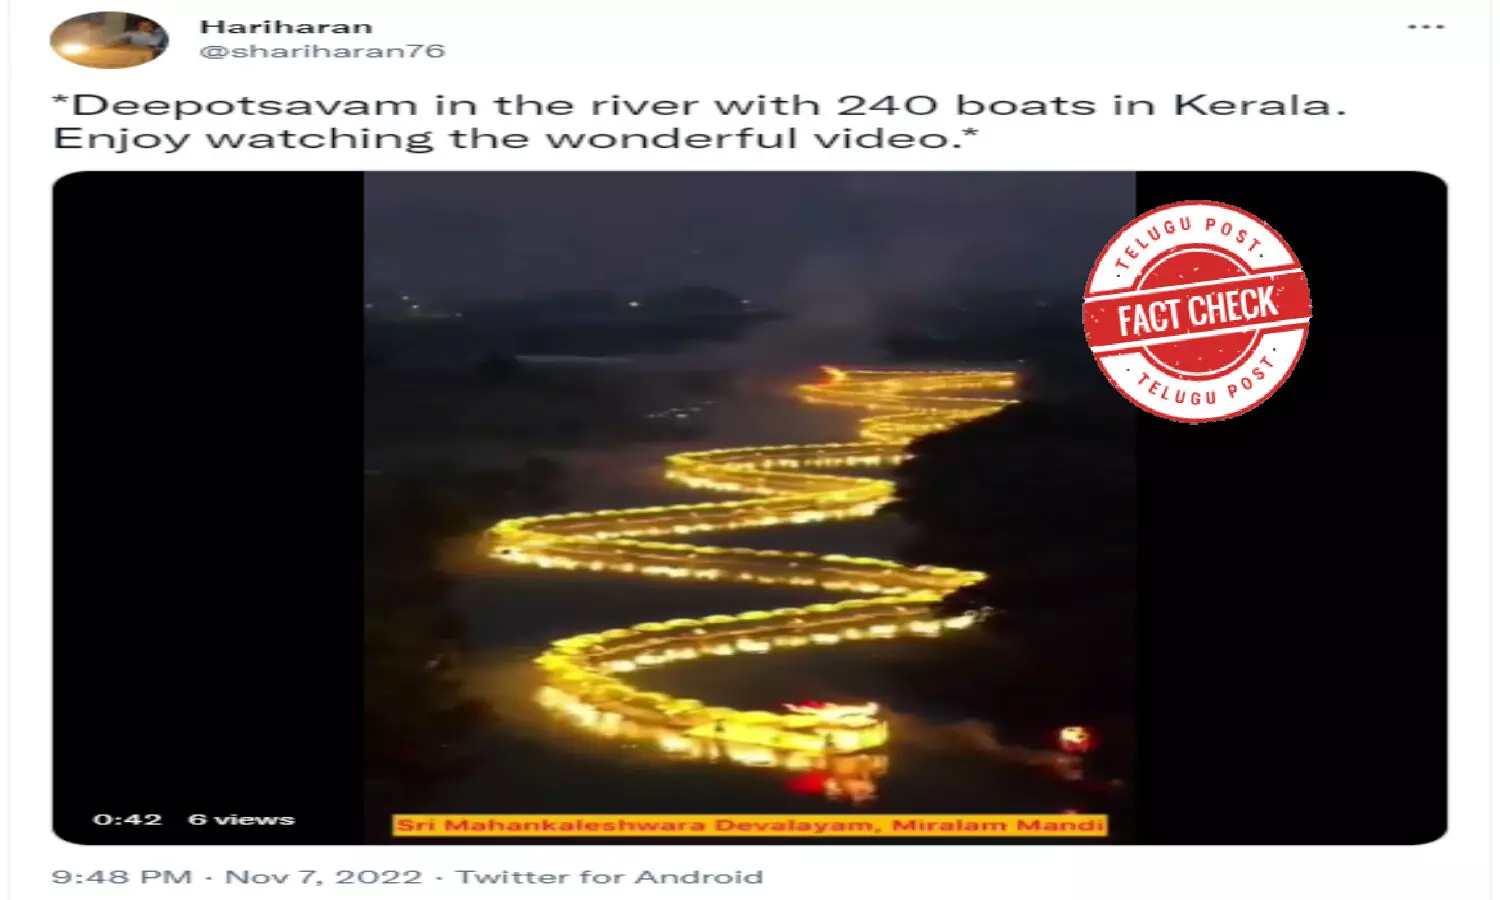 నిజ నిర్ధారణ: నదిలో ప్రకాశవంతంగా వెలిగే పడవలను చూపే వైరల్ వీడియో కేరళ నుండి కాదు, చైనా లోనిది